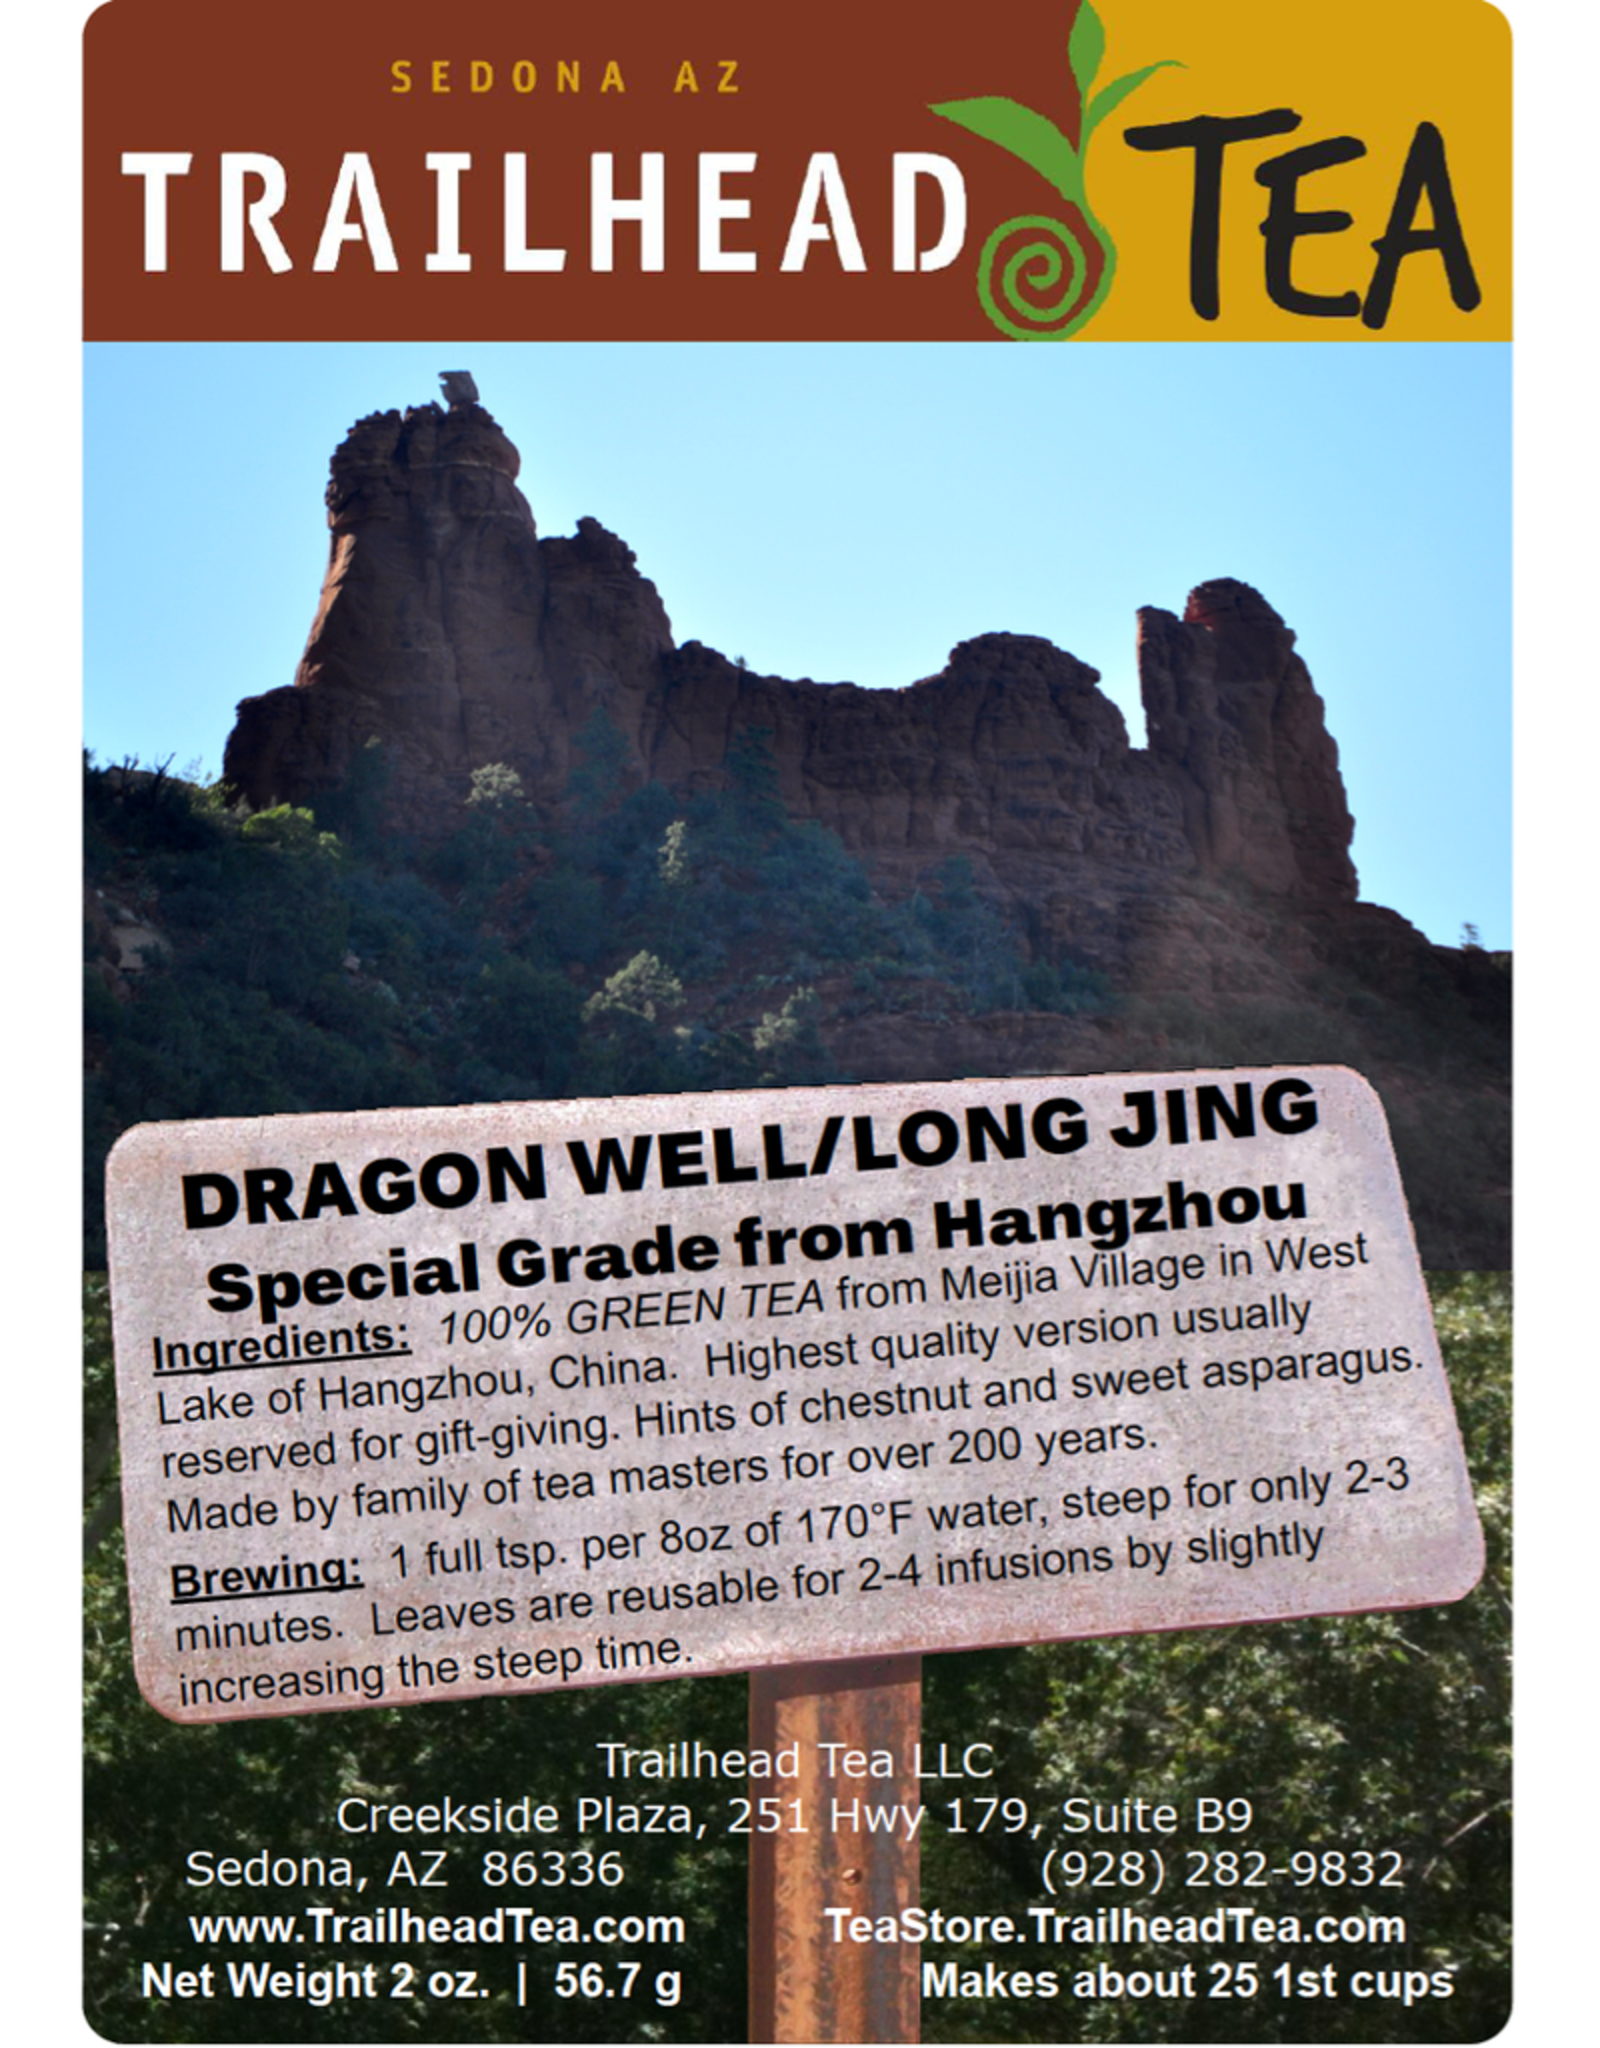 Off-Trail-Rare Dragonwell, Hangzhou Special Grade